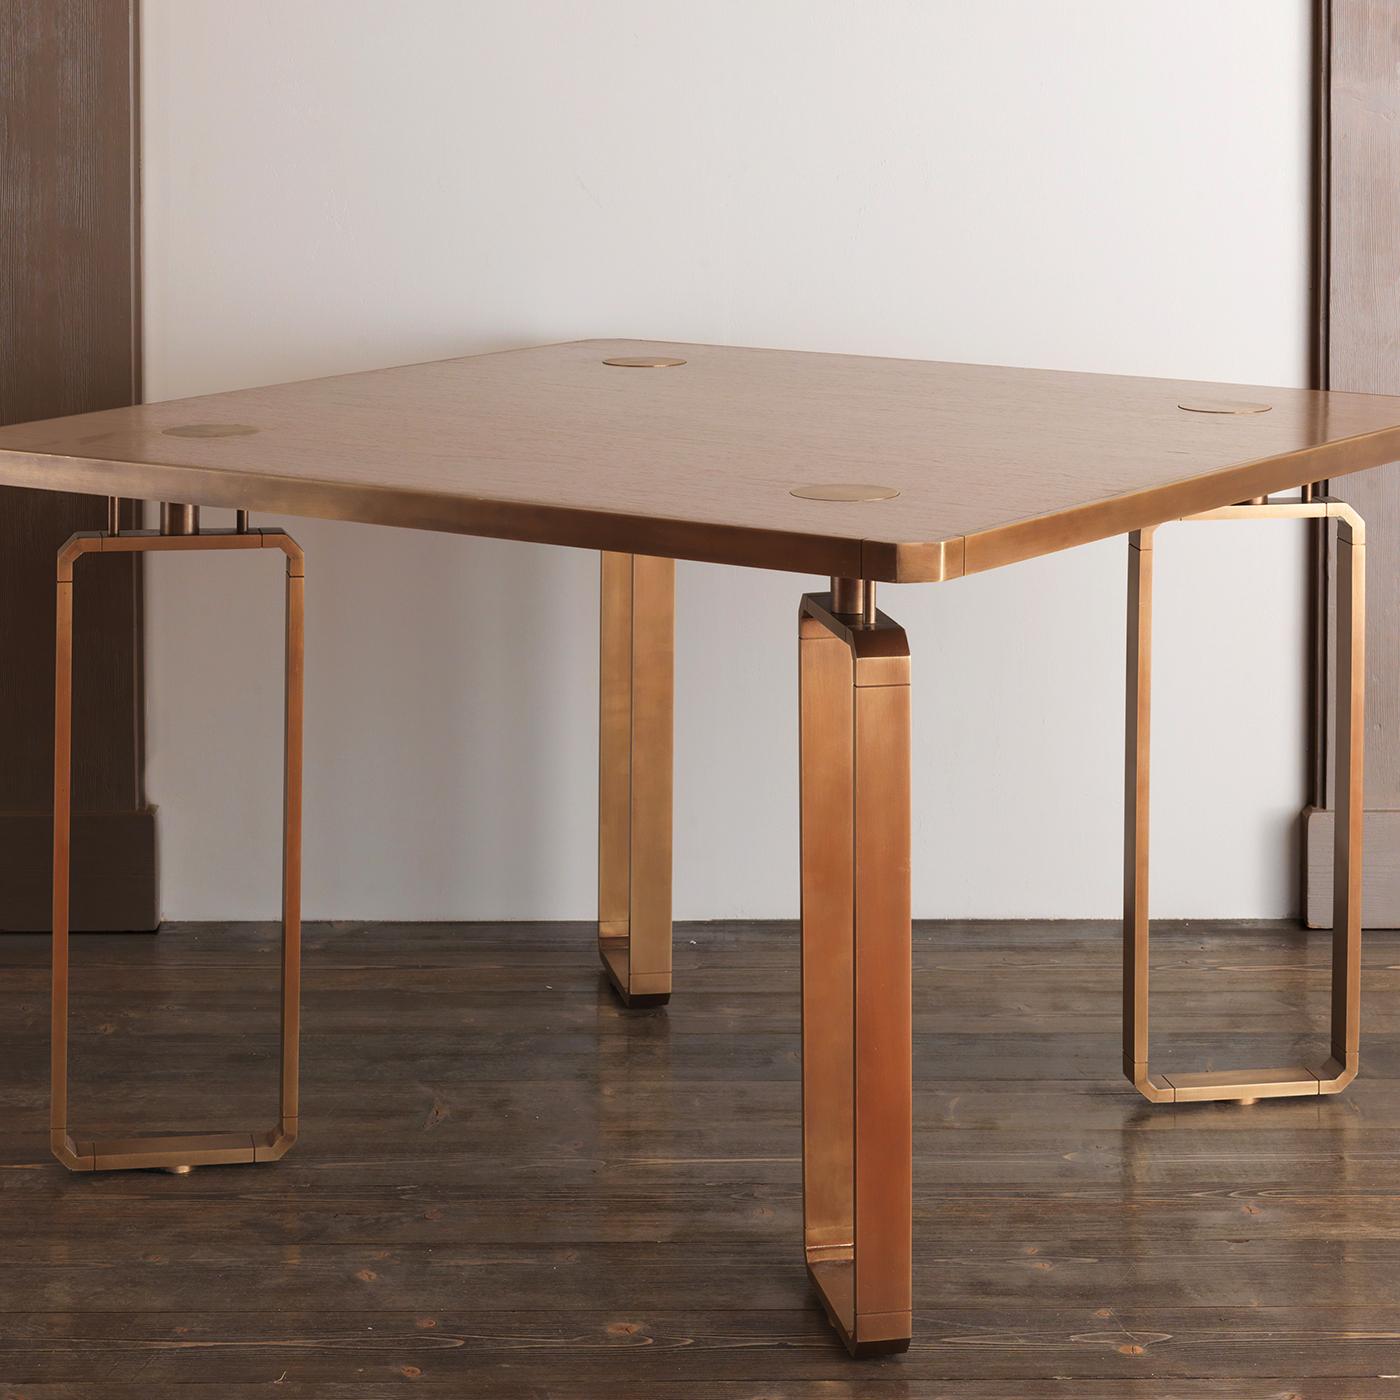 Cette superbe table fait partie de la collection Domino de Ciarmoli Silhouette Studio, une série ludique de meubles dont les silhouettes et les accents décoratifs évoquent le motif des pièces de domino. Le plateau carré en bois, dont les coins